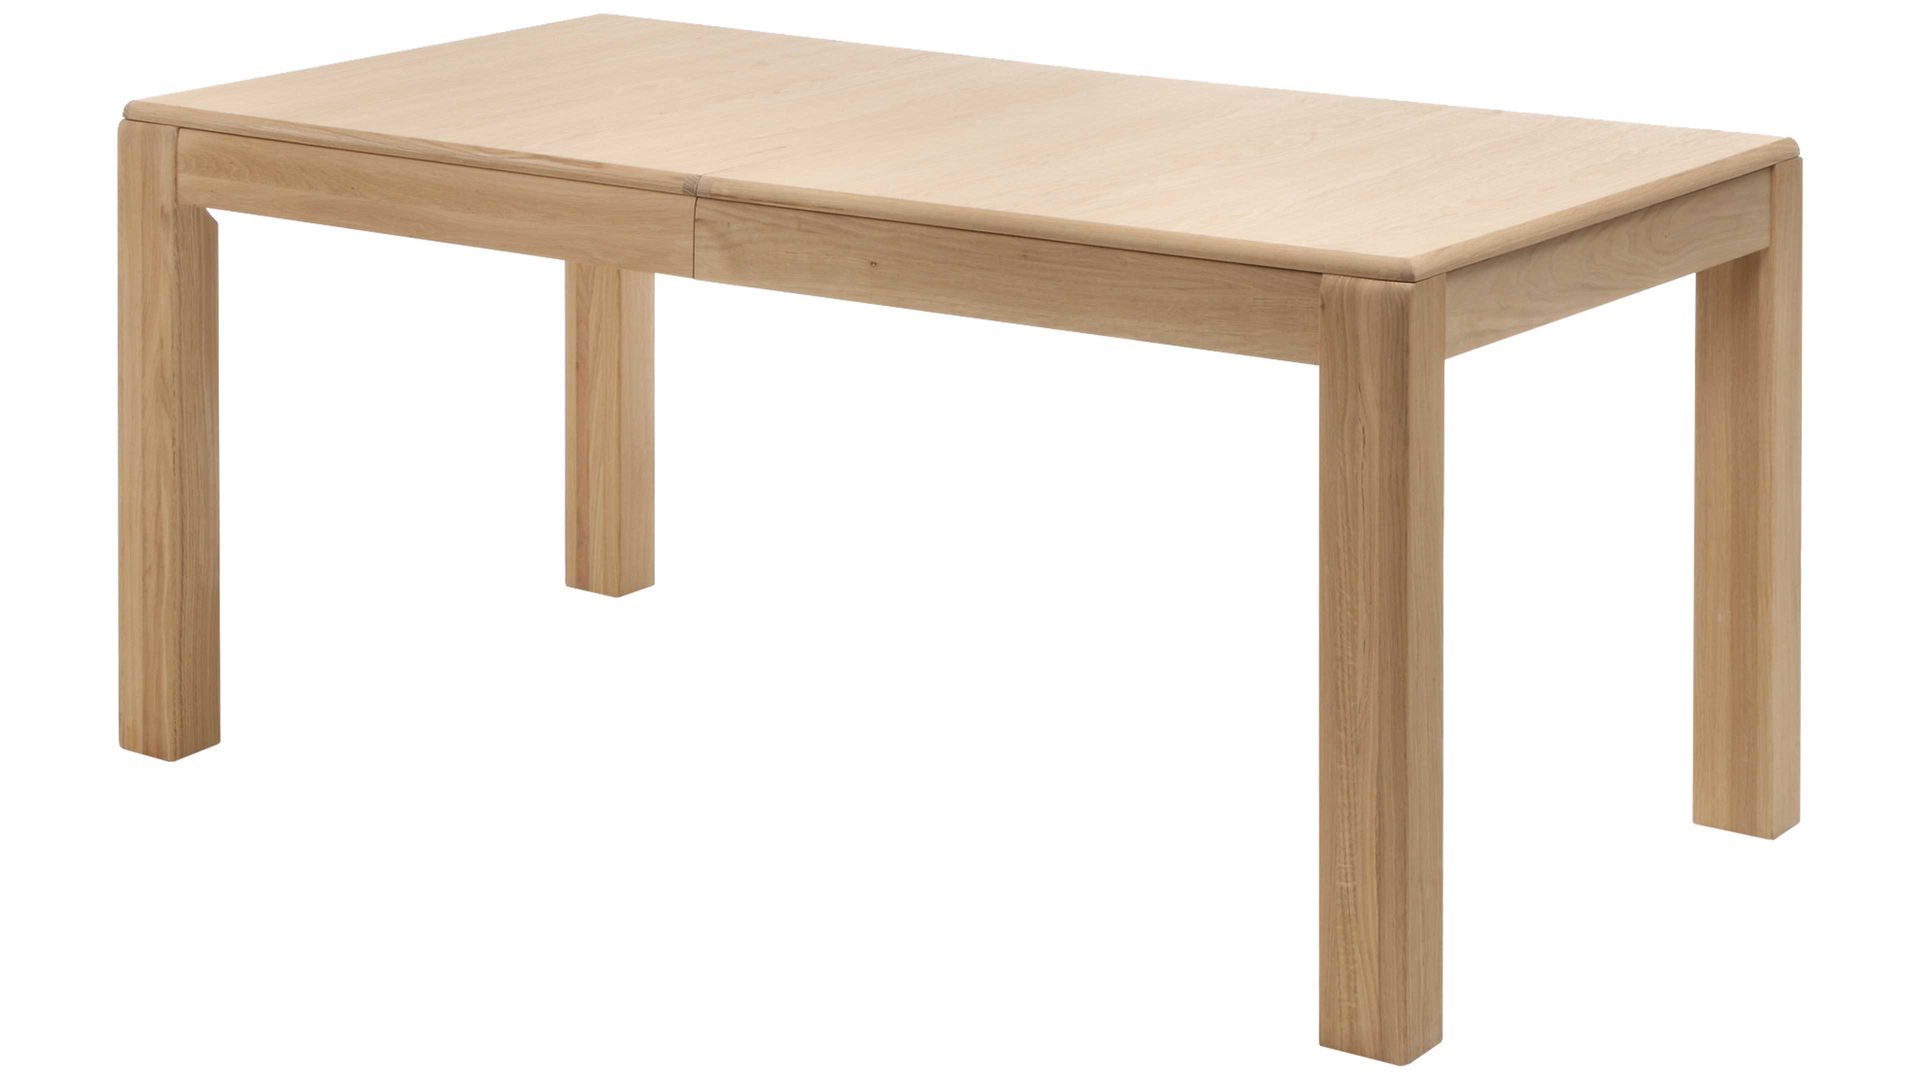 Auszugtisch Mca furniture aus Holz in Holzfarben Hell Wohnprogramm Sena - Auszugtisch bzw. Esstisch Eiche Bianco – ca. 160-260 x 90 cm